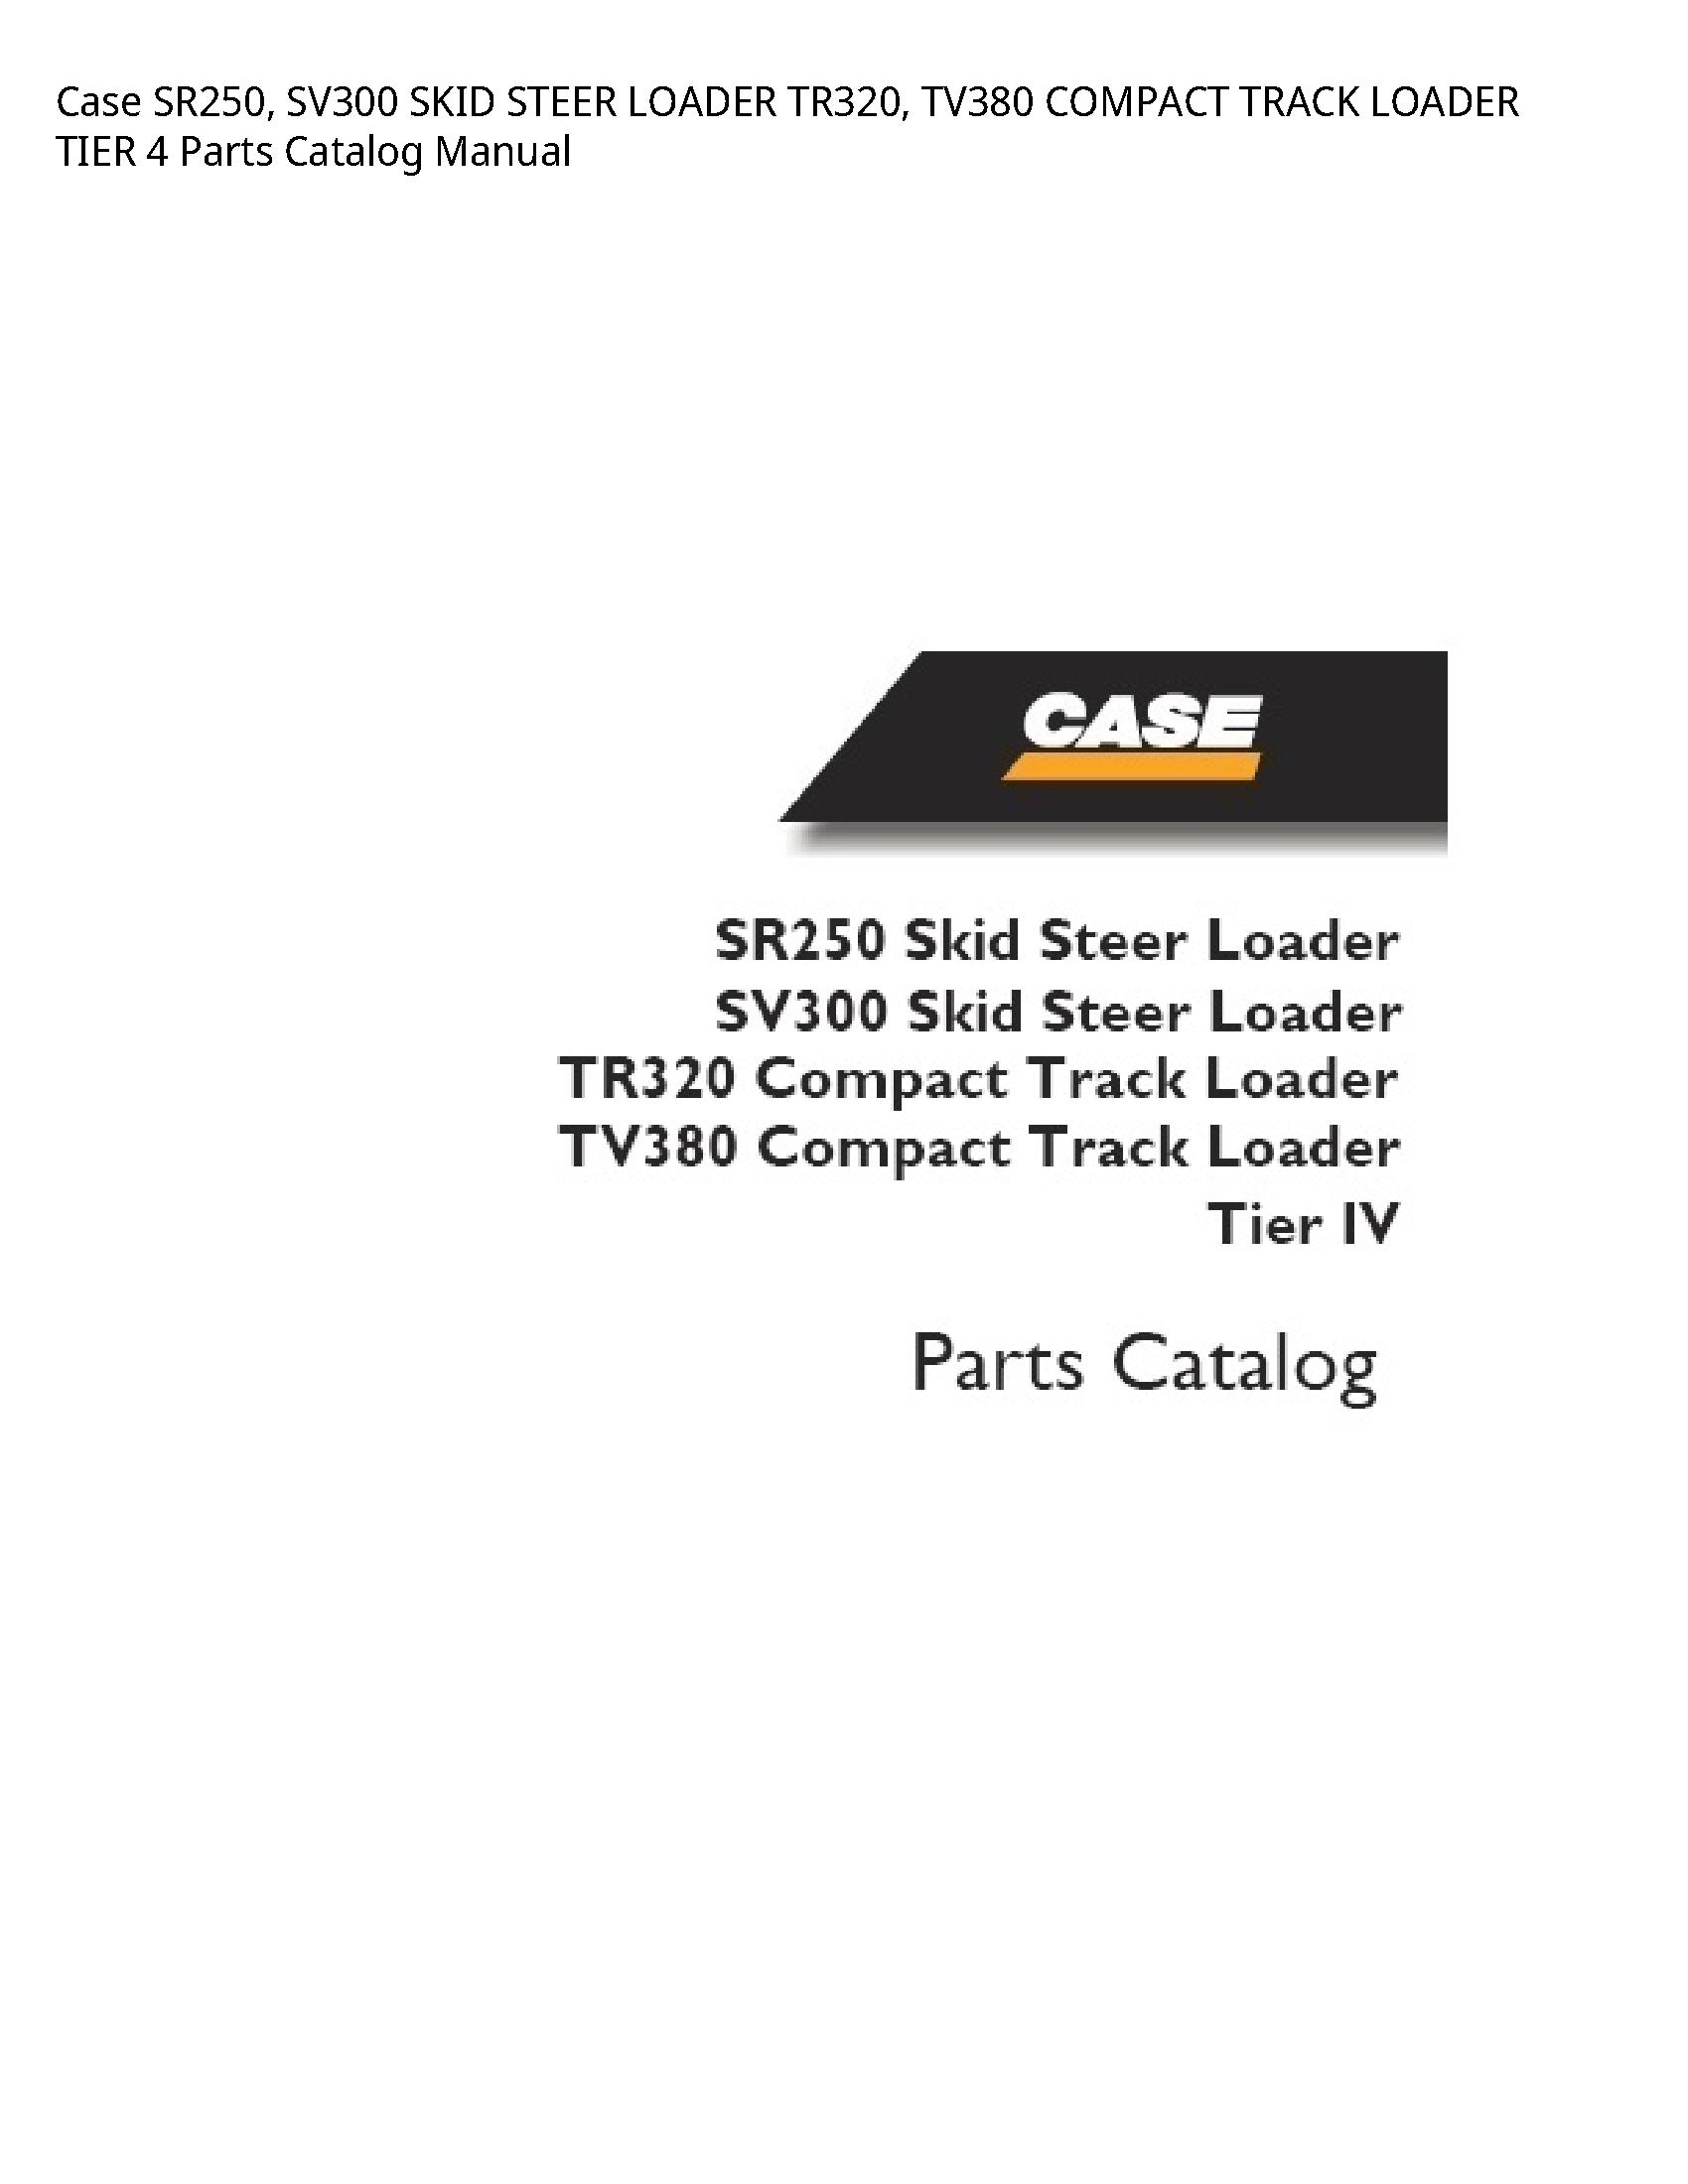 Case/Case IH SR250 SKID STEER LOADER COMPACT TRACK LOADER TIER Parts Catalog manual